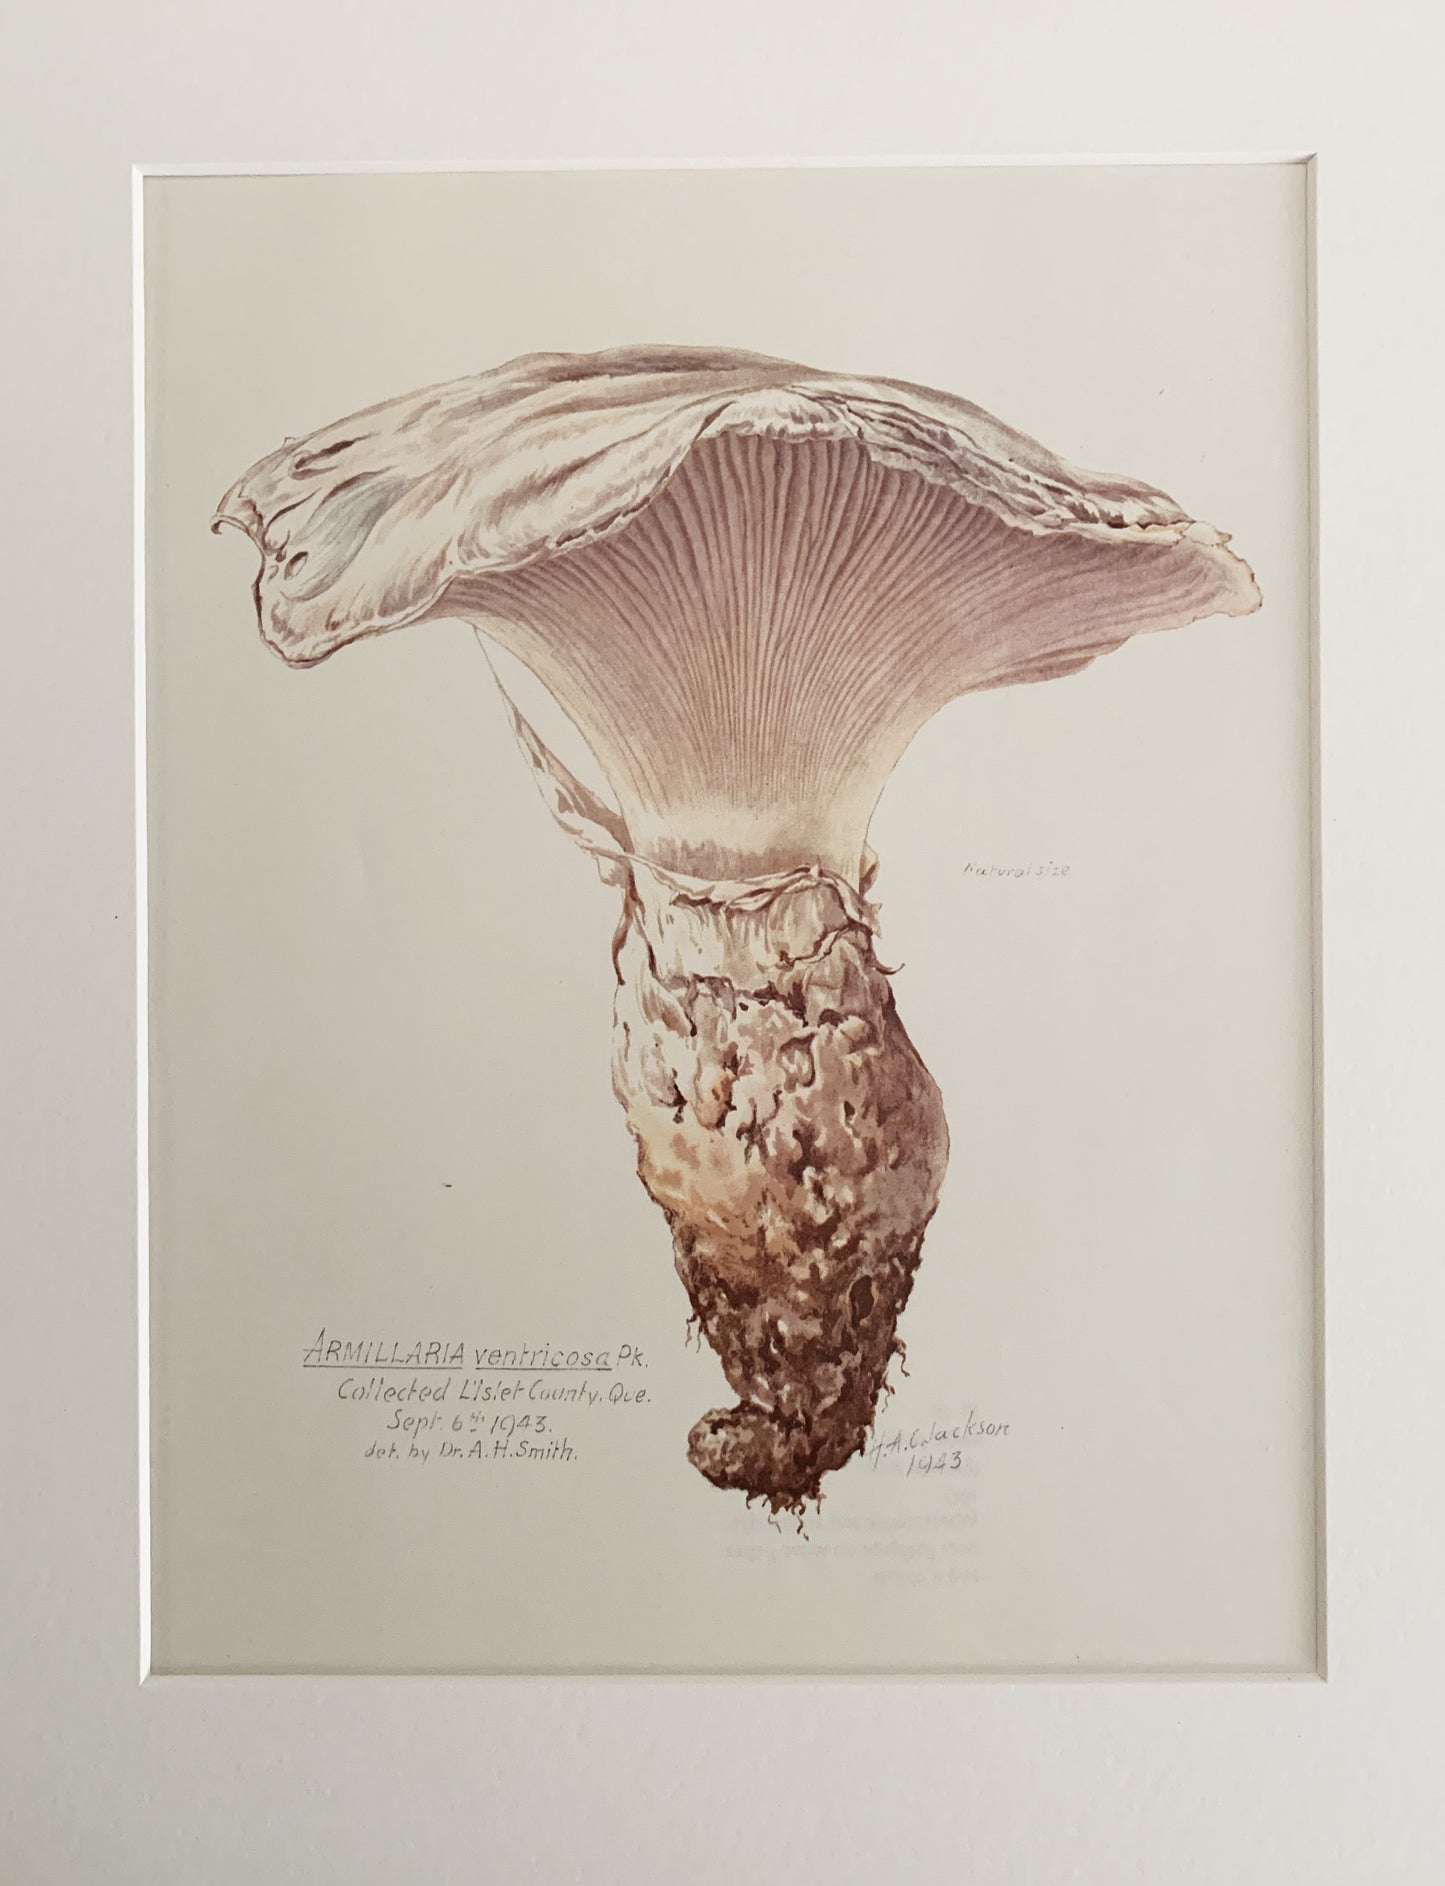 Vintage 1970’s Matted Mushroom Prints 11x14”